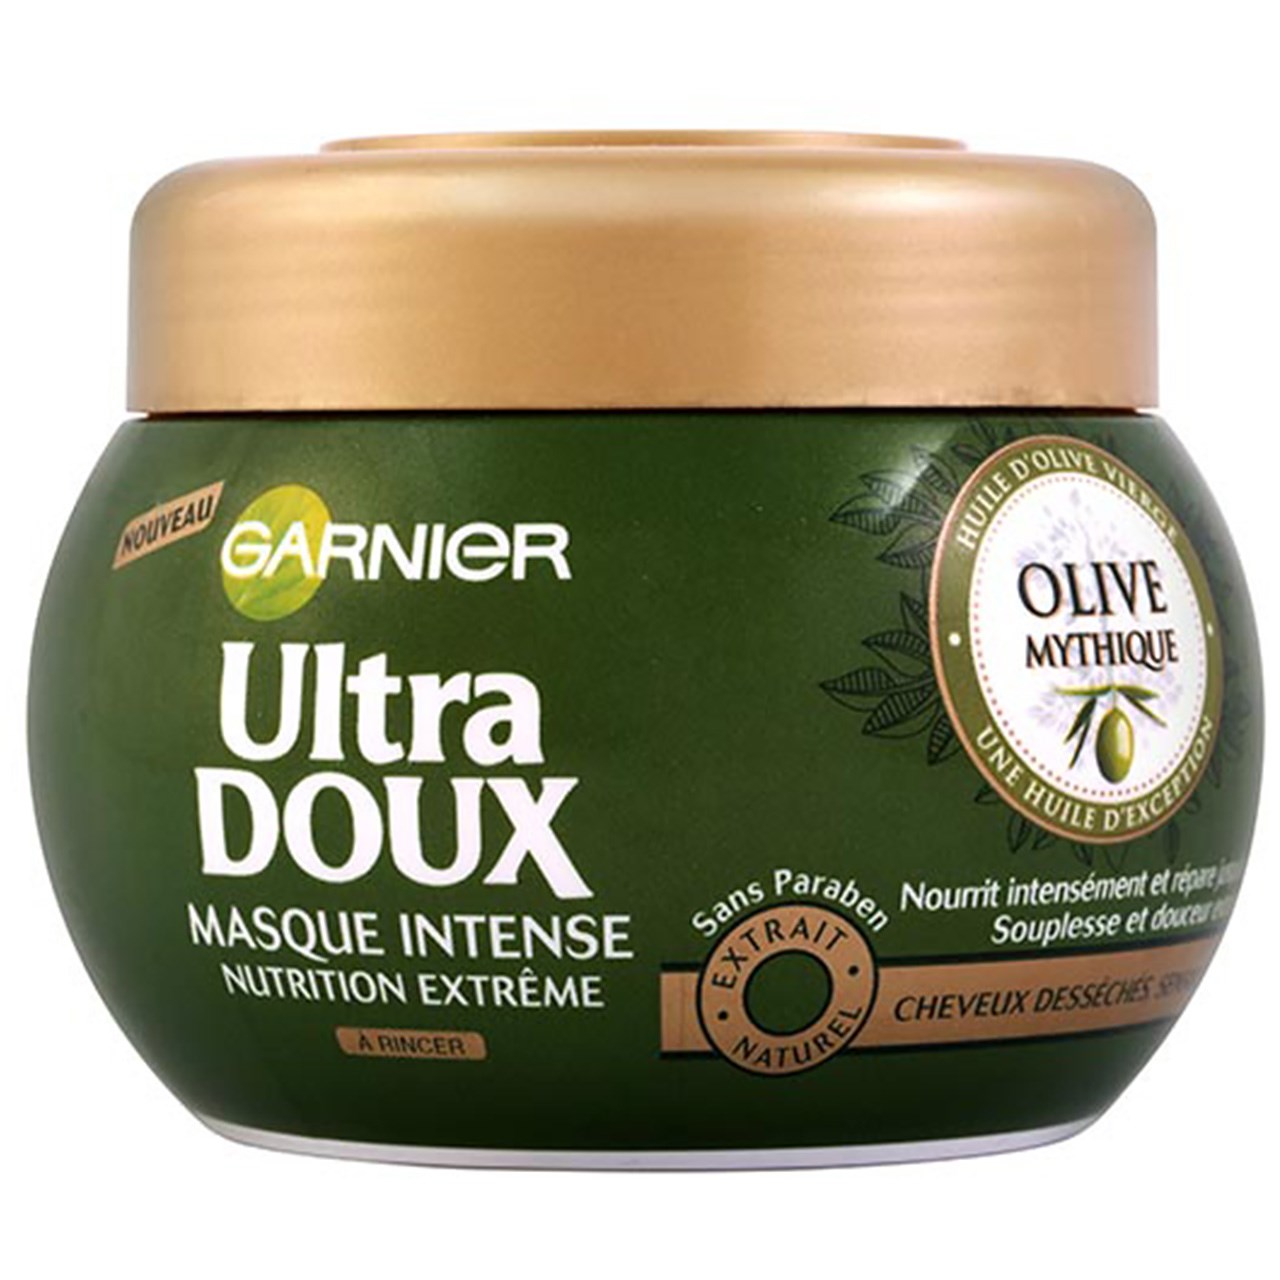 ماسک مو تقویت کننده و احیا کننده گارنیه سری Ultra Doux مدل Mythic Olive حجم 300 میلی لیتر